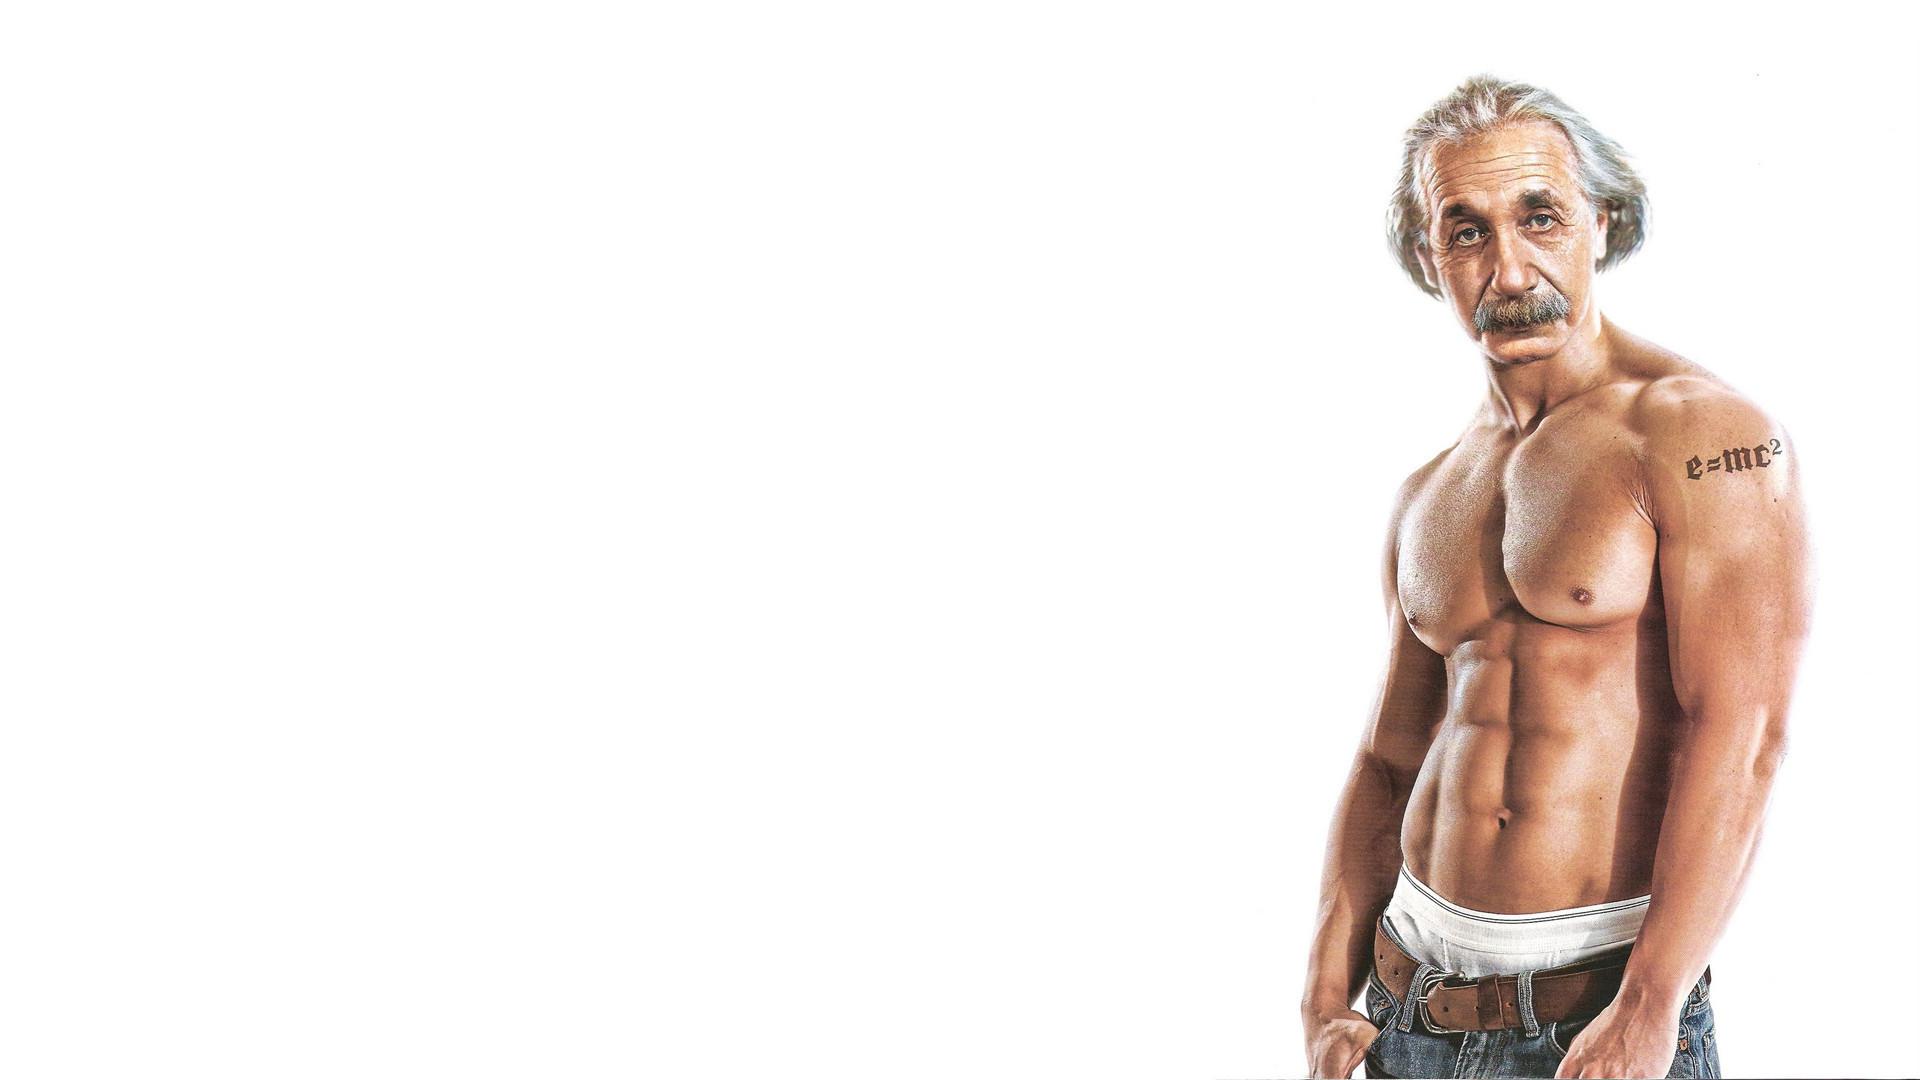 Albert Einstein Muscle , HD Wallpaper & Backgrounds